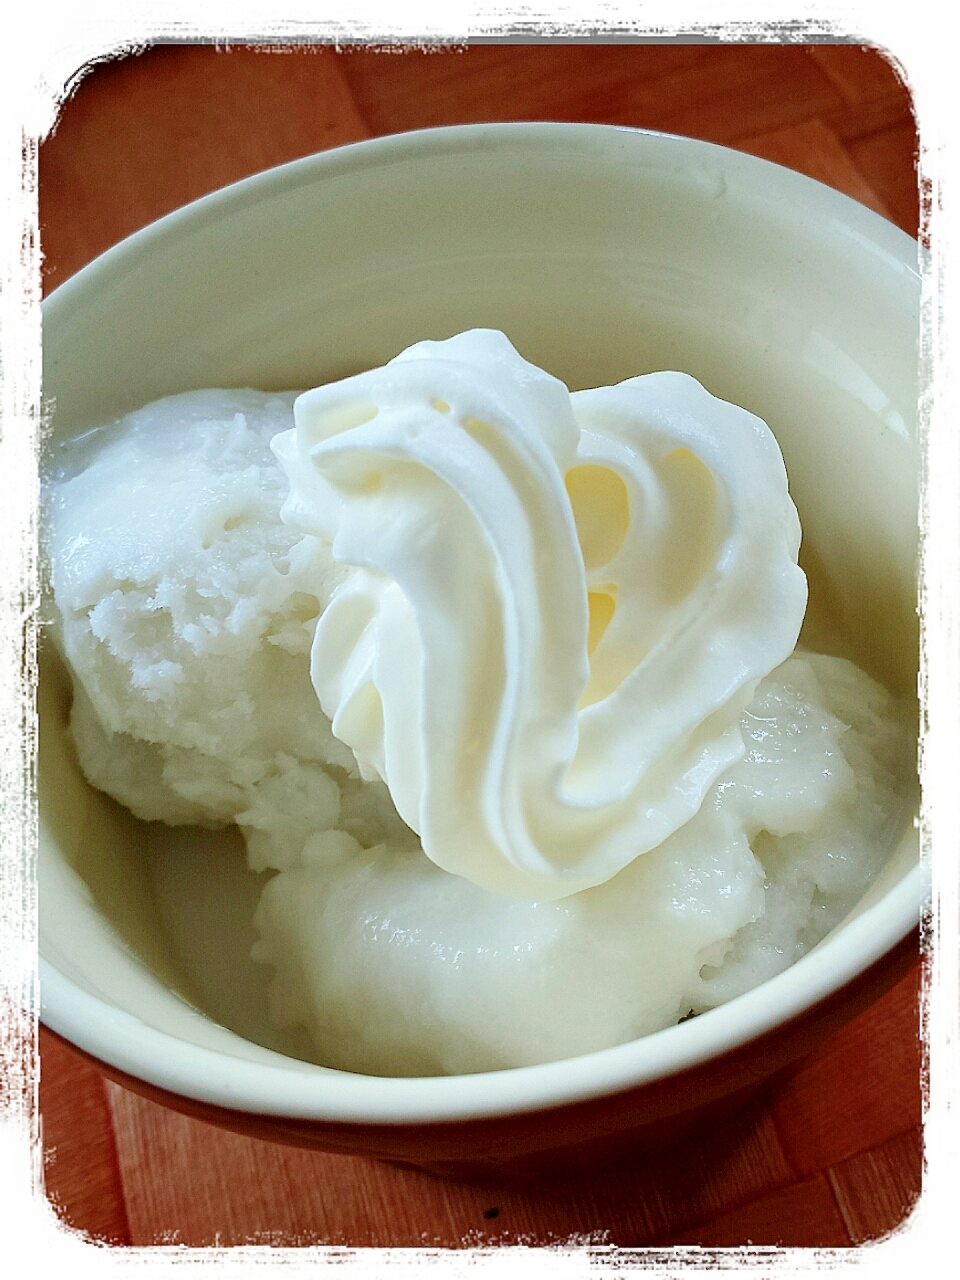 スプレー生クリームでココナッツミルクアイス